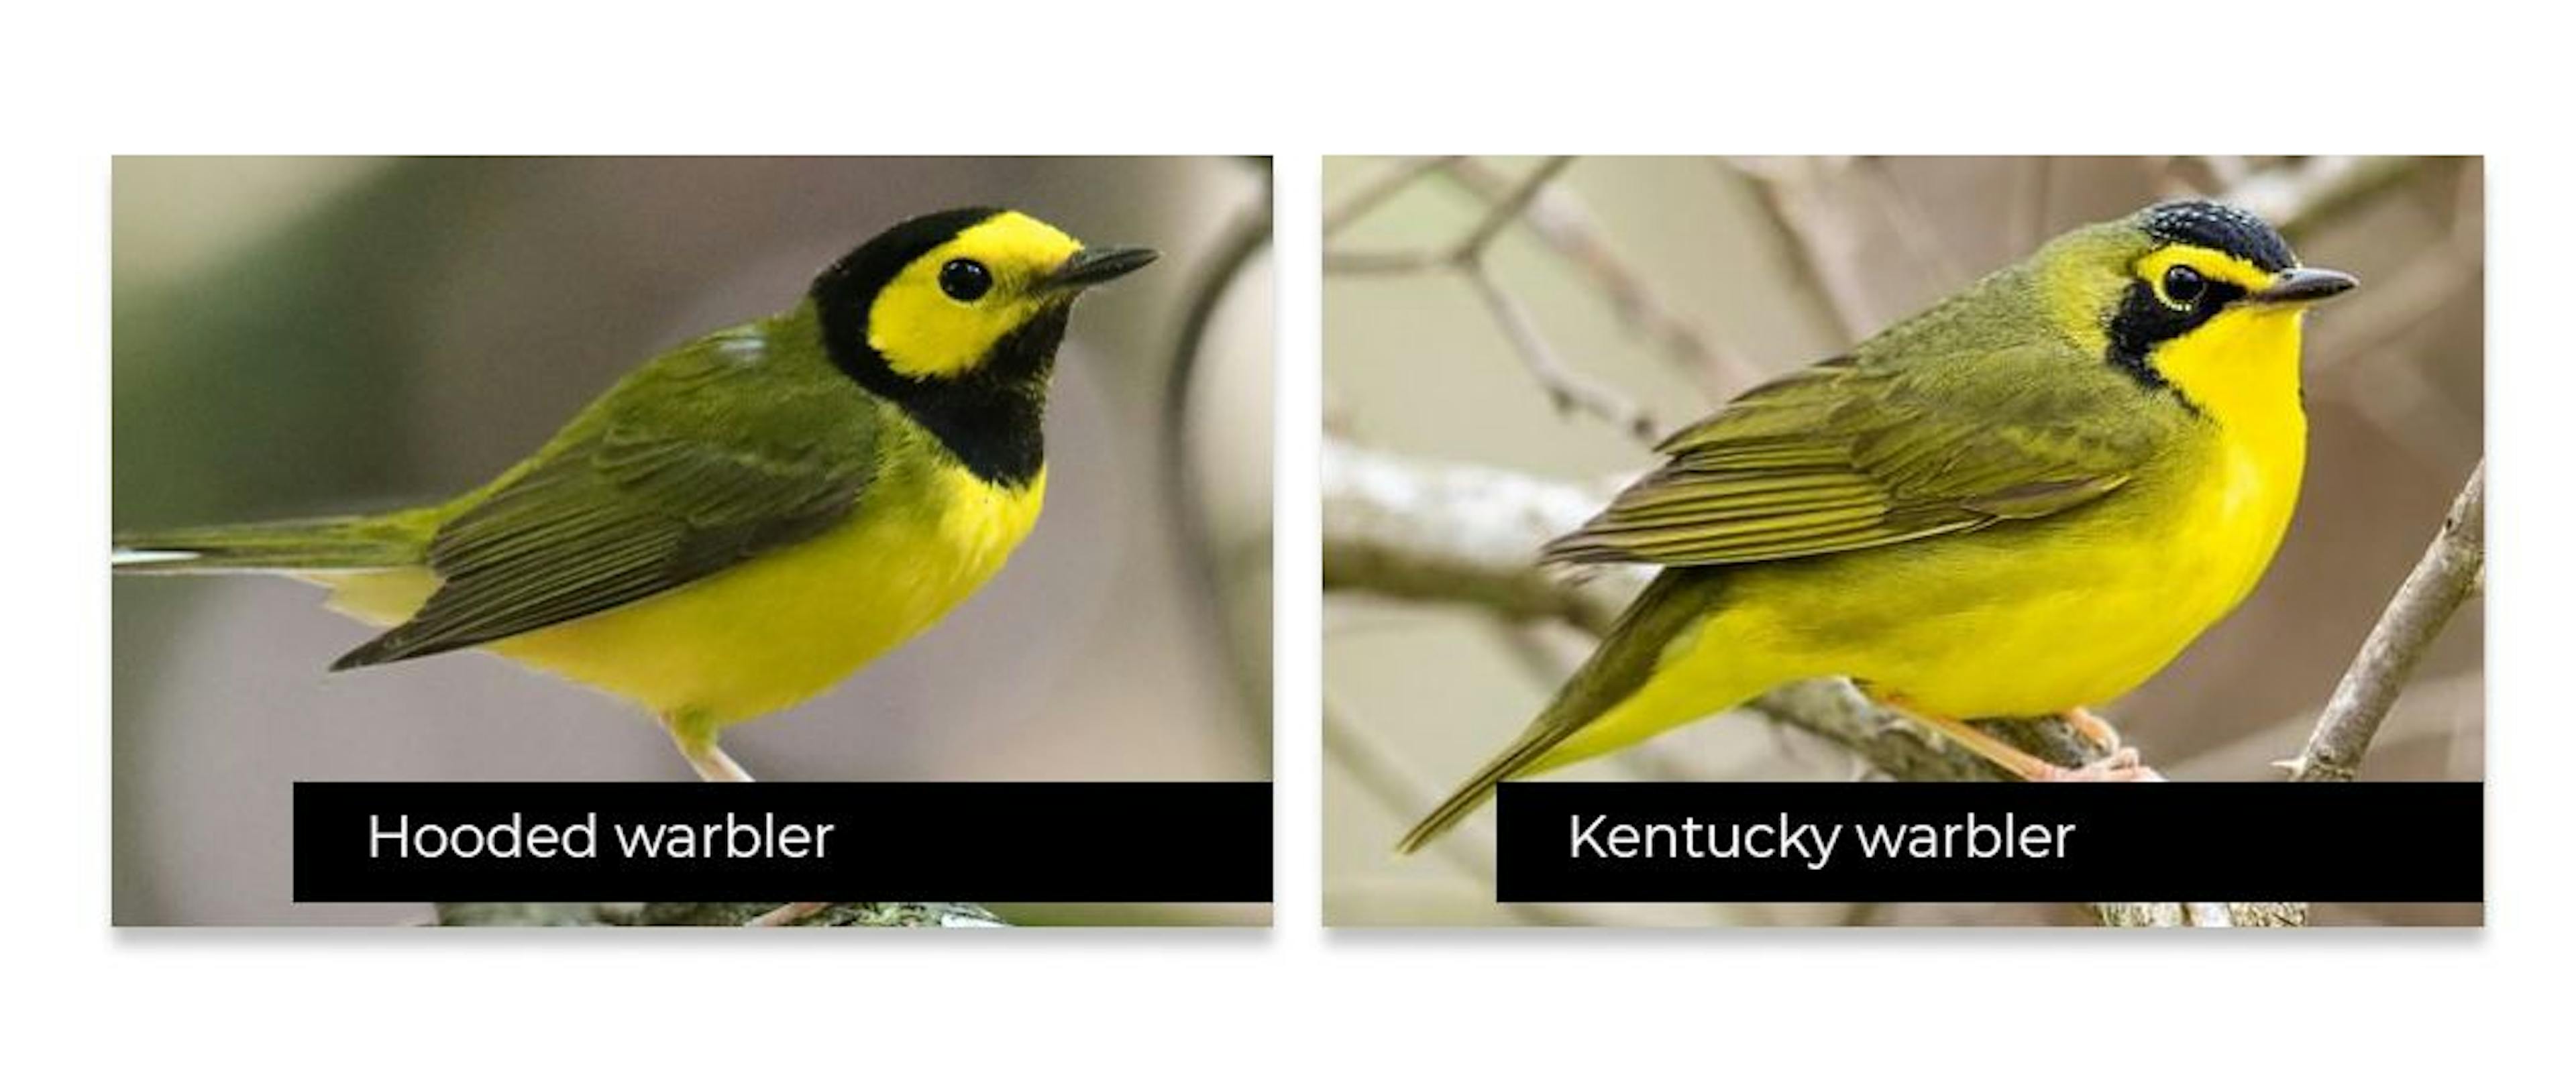 Algumas aves são muito parecidas entre si, tornando difícil detectá-las com precisão